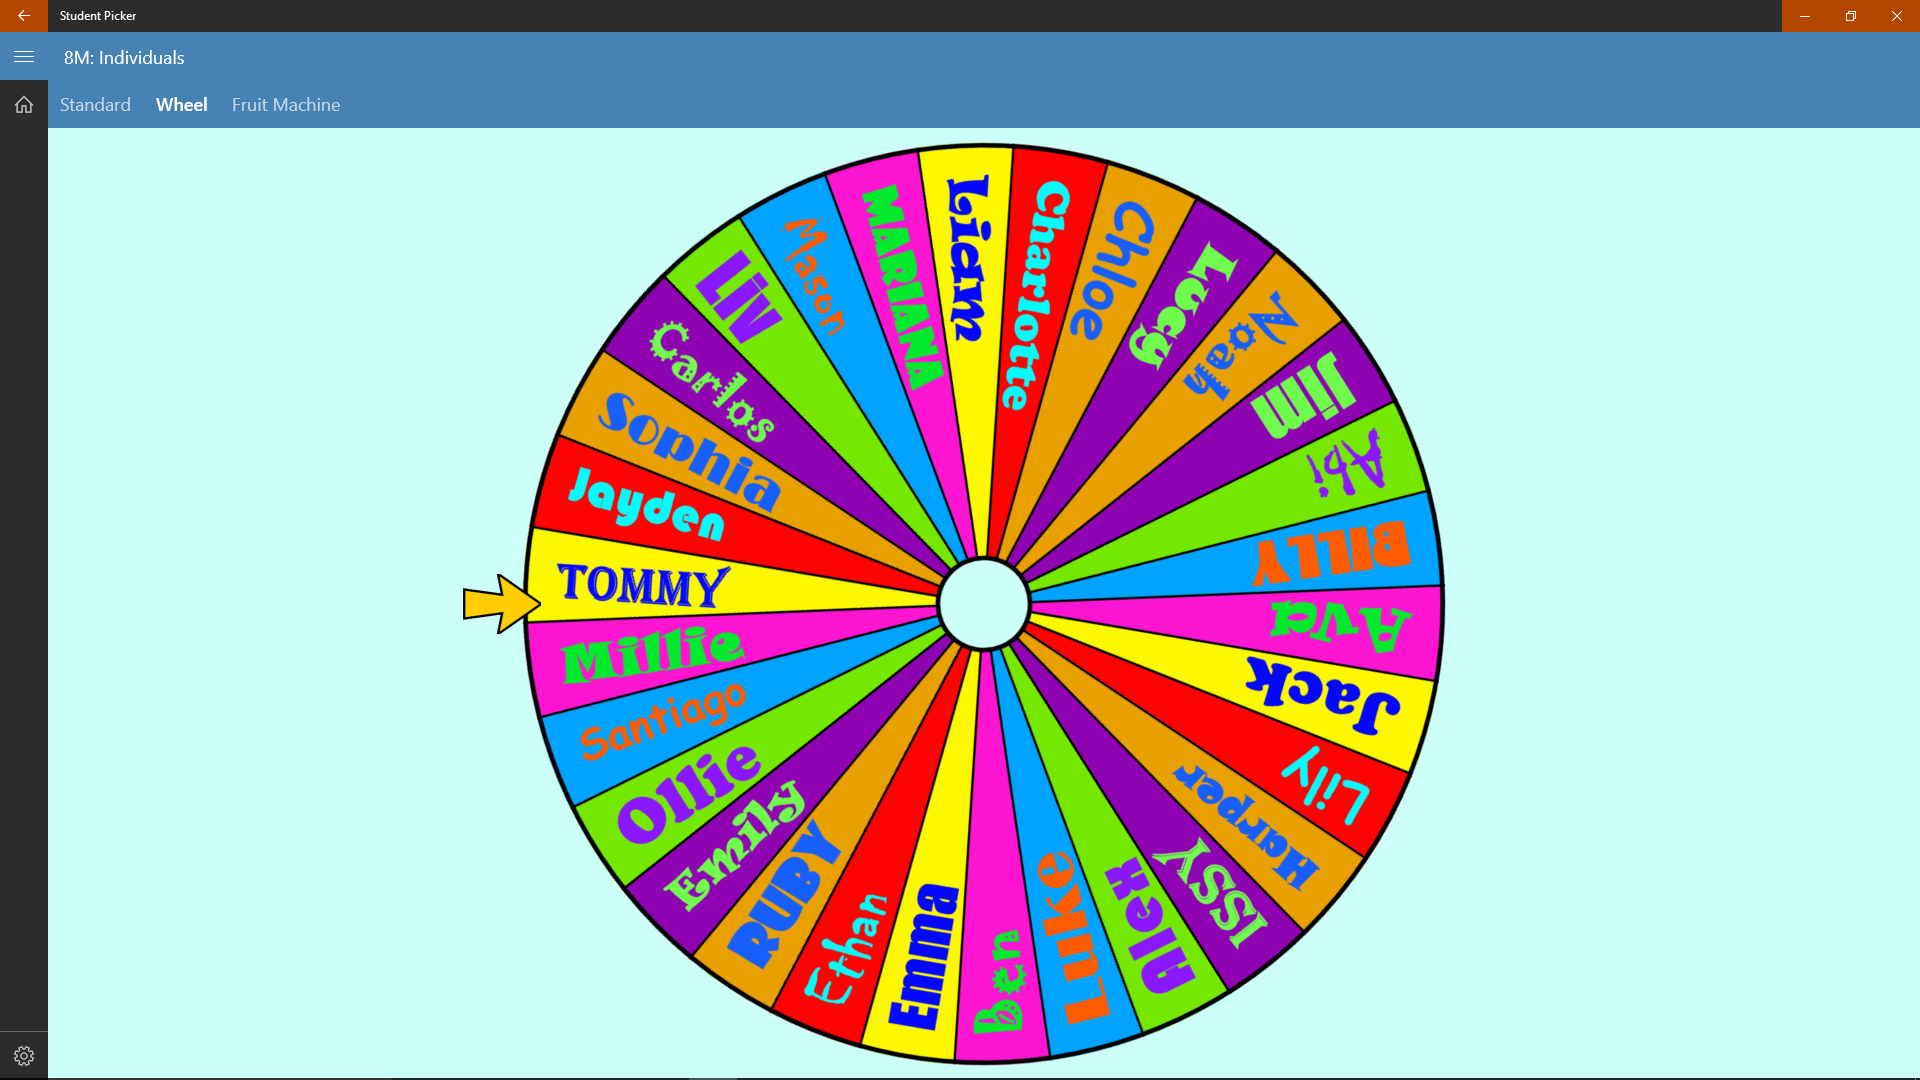 random name picker wheel for contest